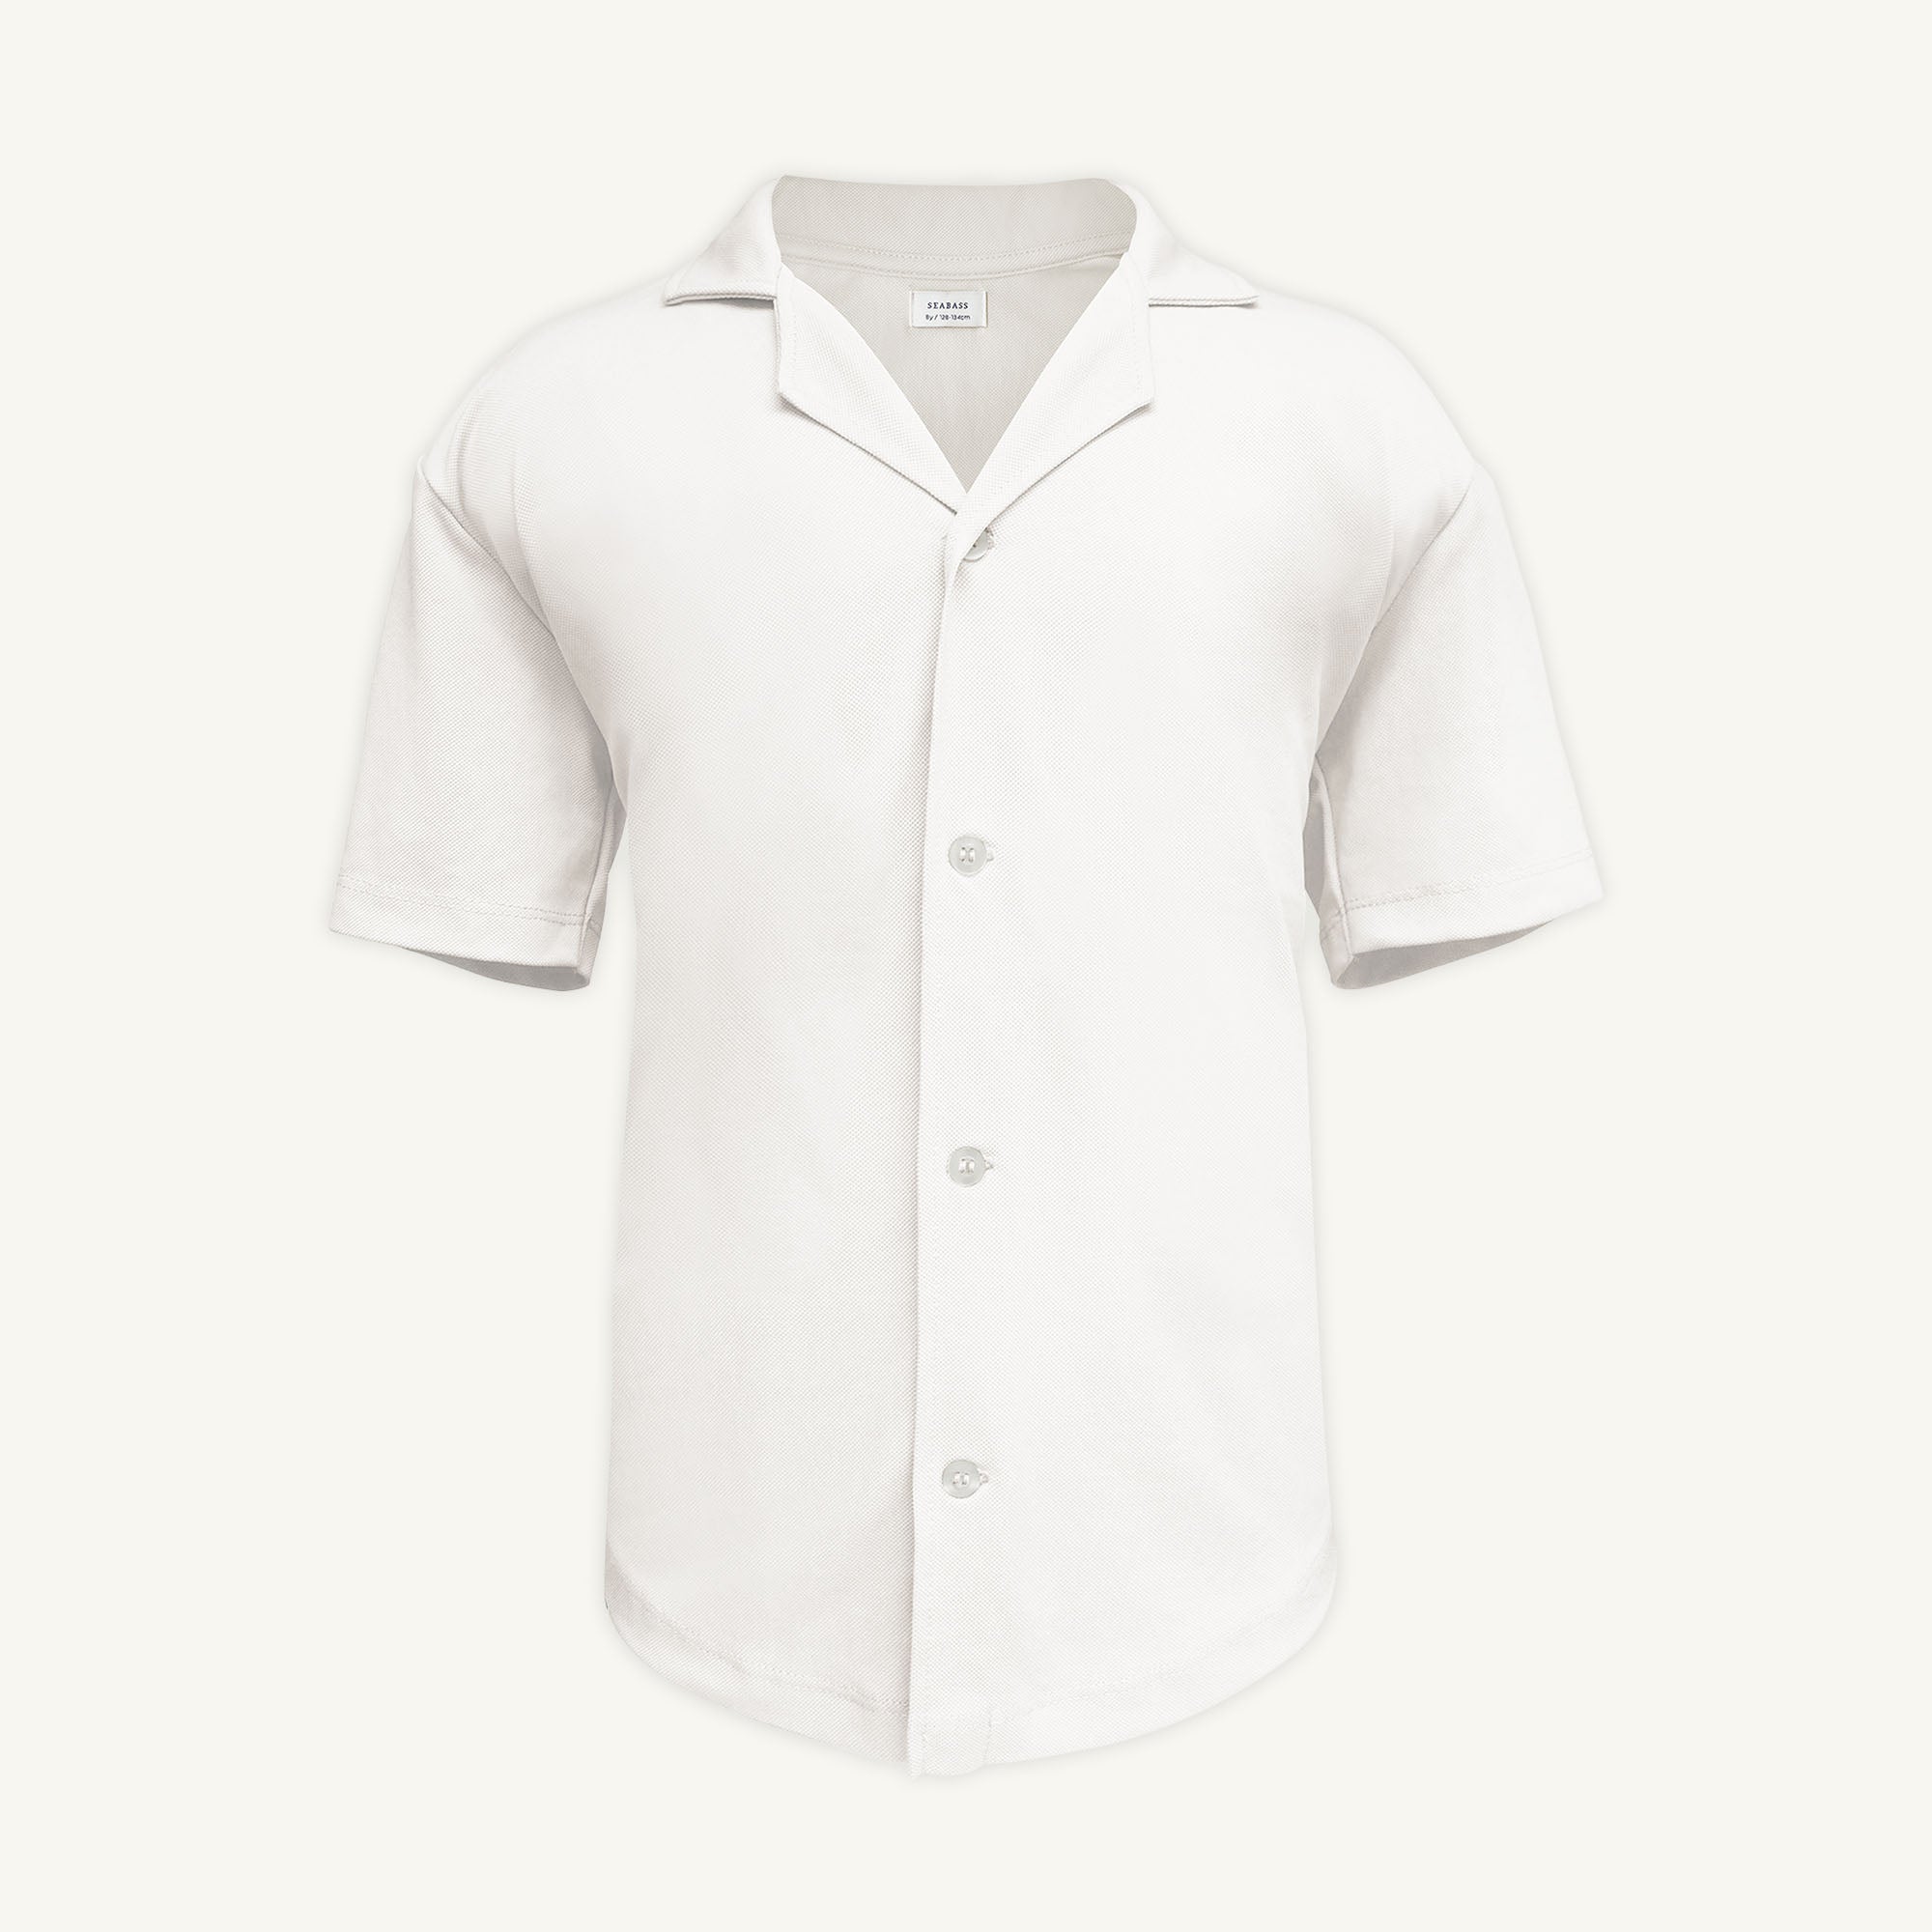 Camisa corta de hombre con protección solar - blanco